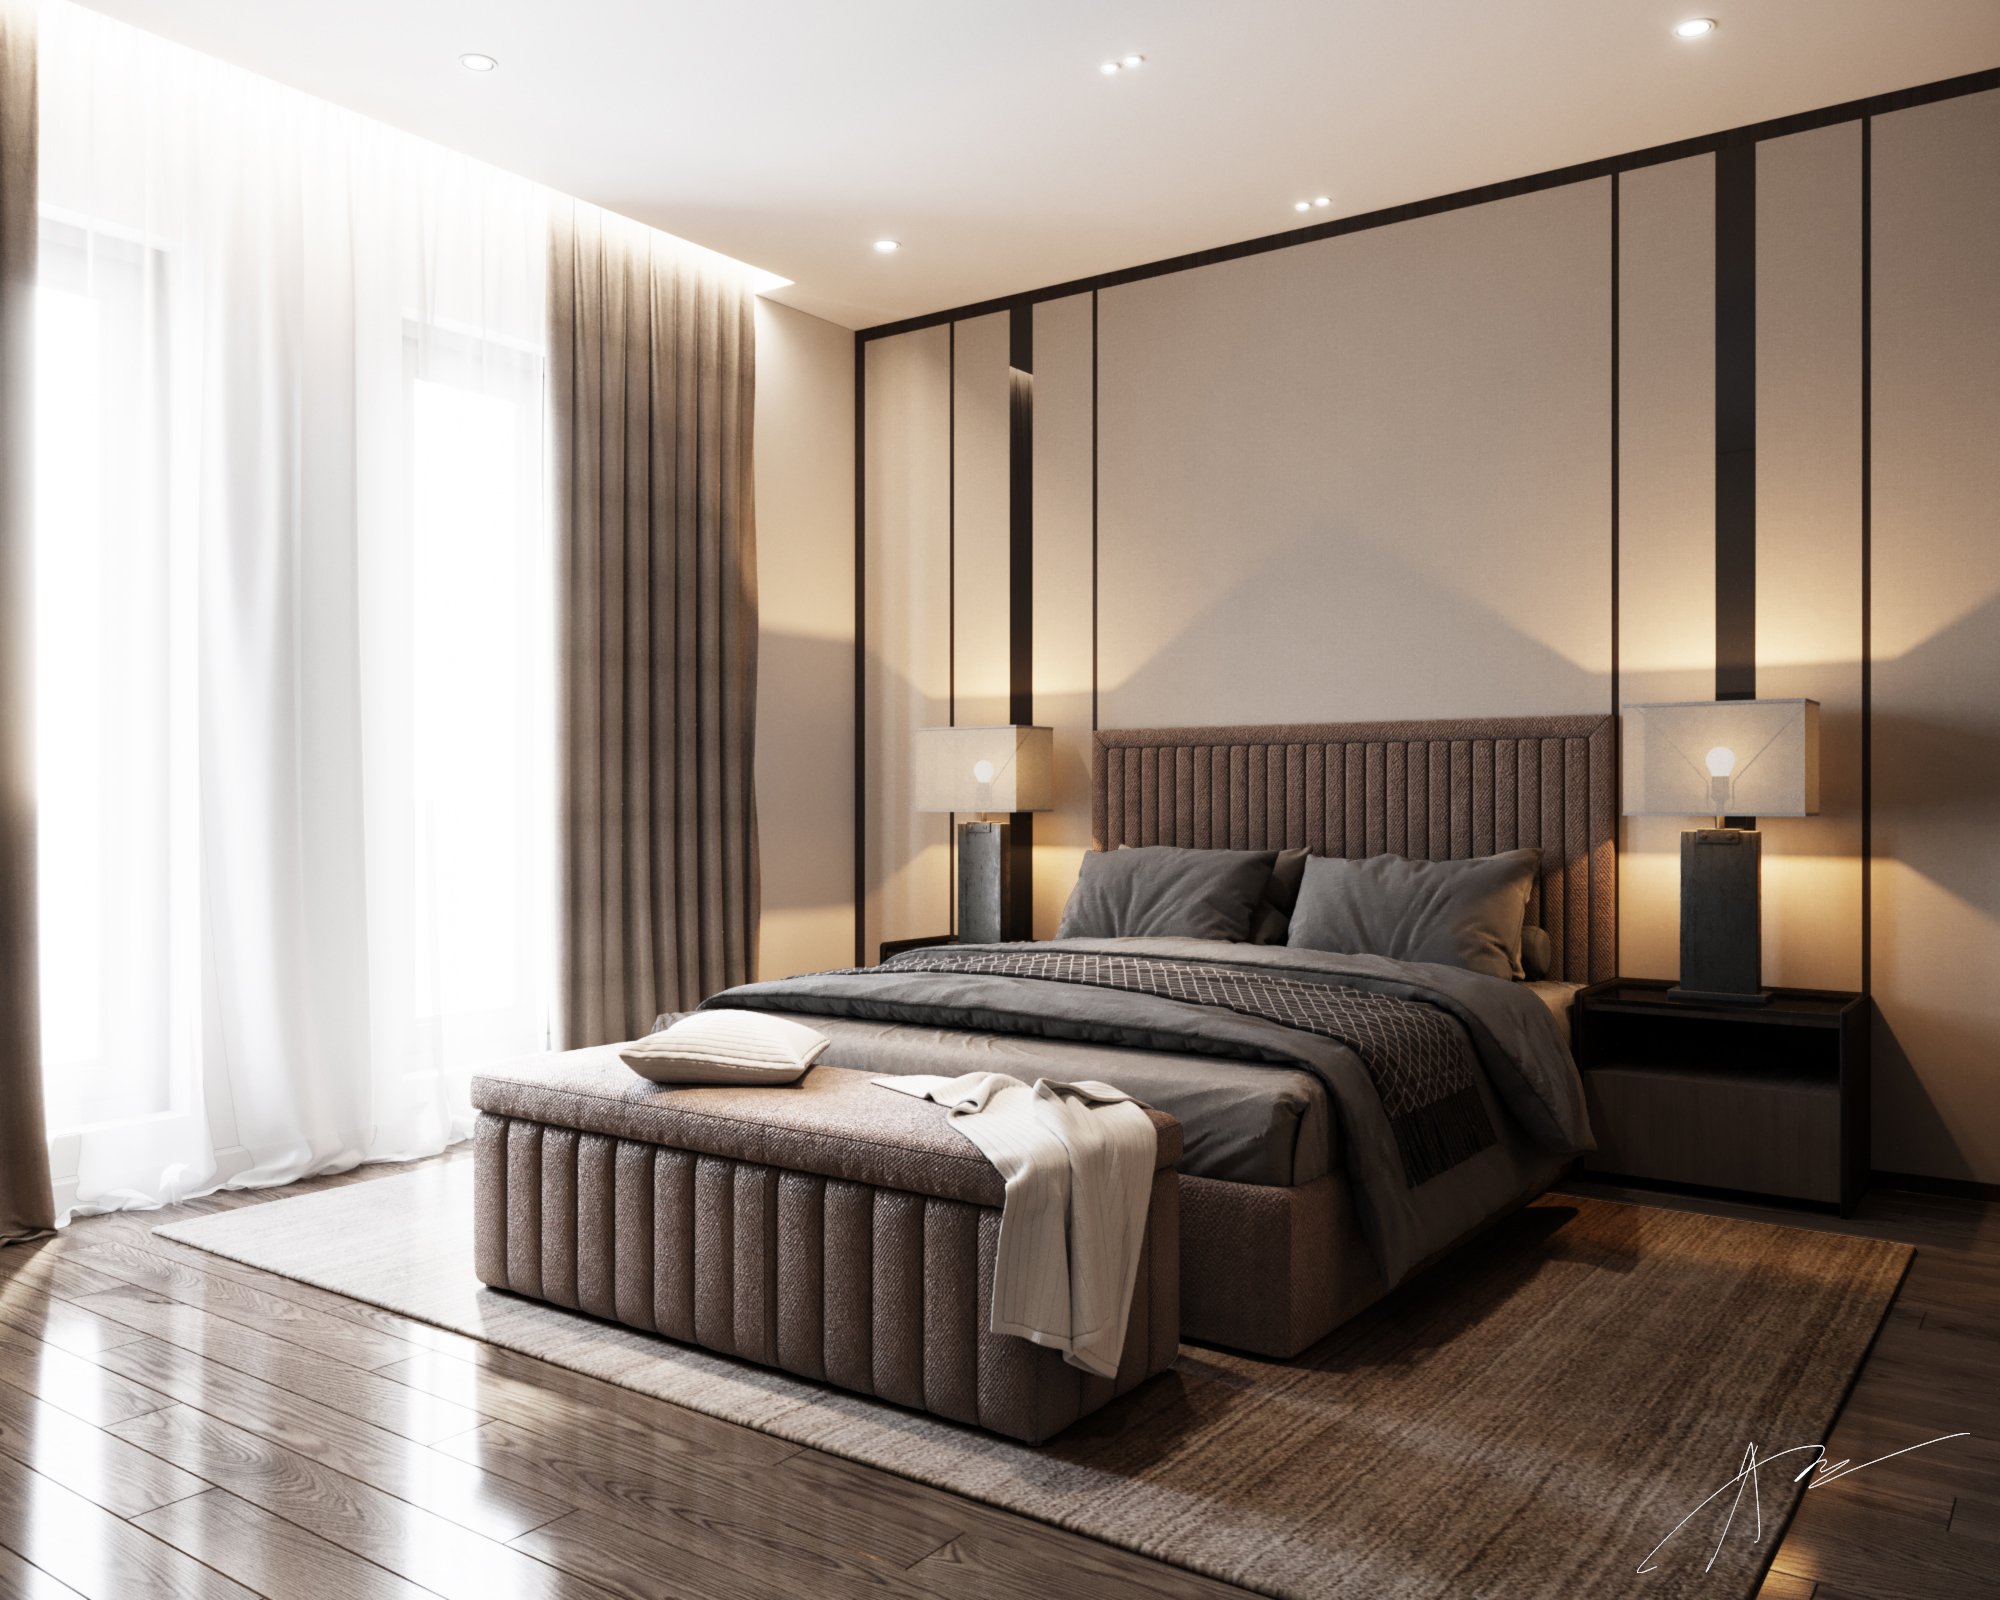 Phòng ngủ, phong cách hiện đại Modern, thiết kế concept nội thất, nhà phố Verosa Park Khang Điền